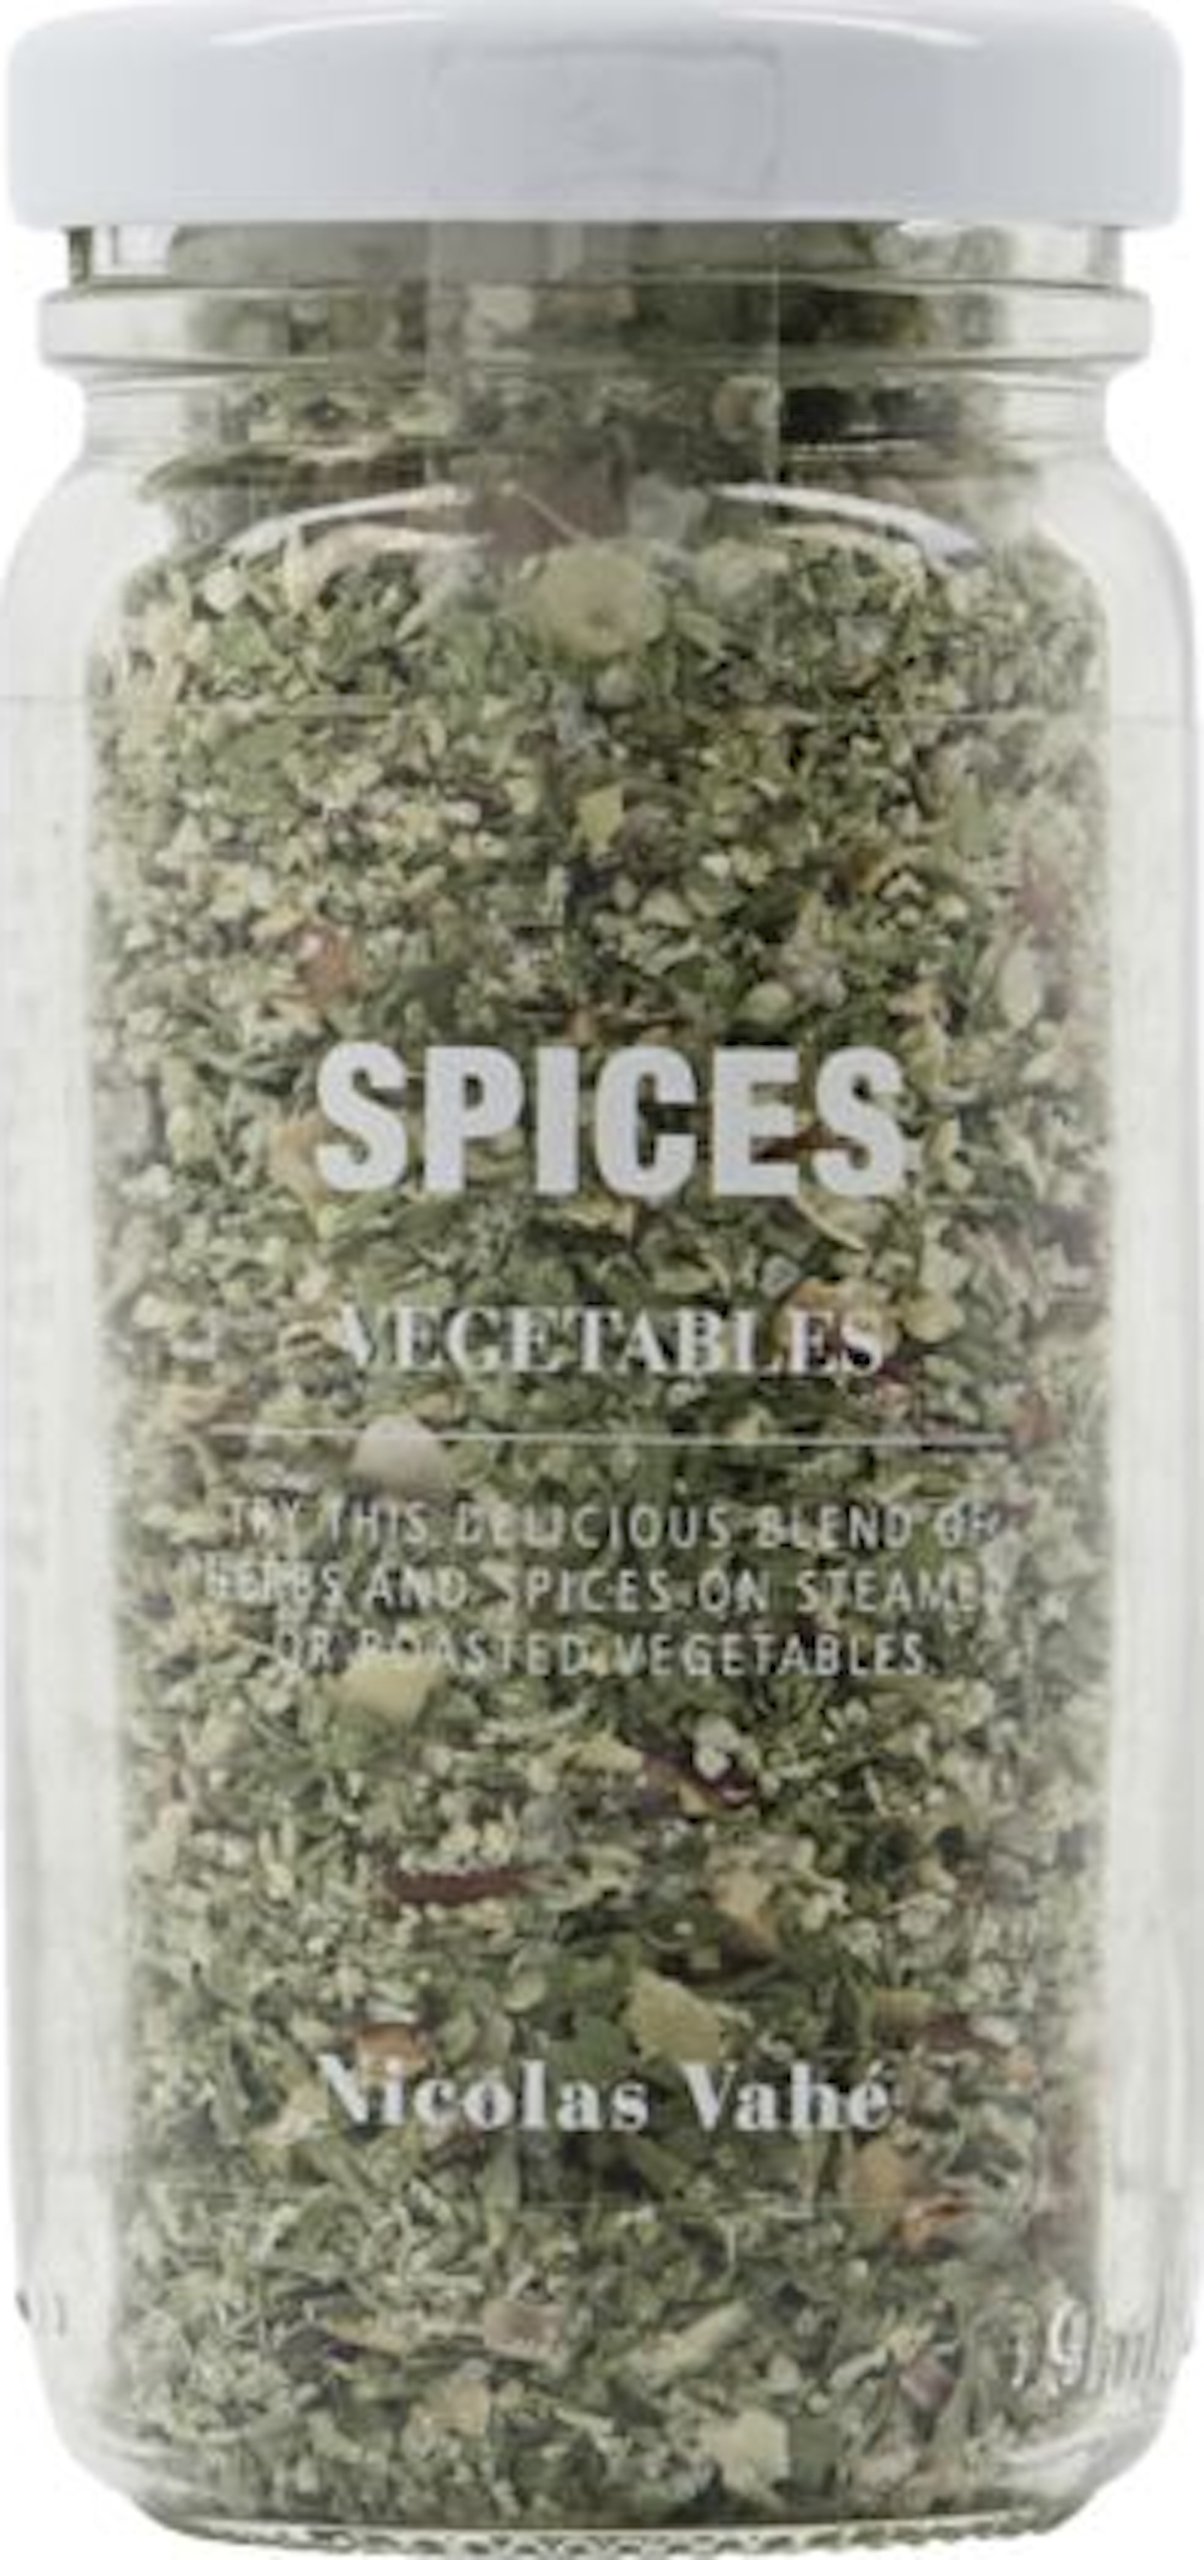 Krydderier, Hvidløg, Persille & Rød peber by Nicolas Vahé (D: 4,5 cm. x H: 9,2 cm., Hvid/Grøn)